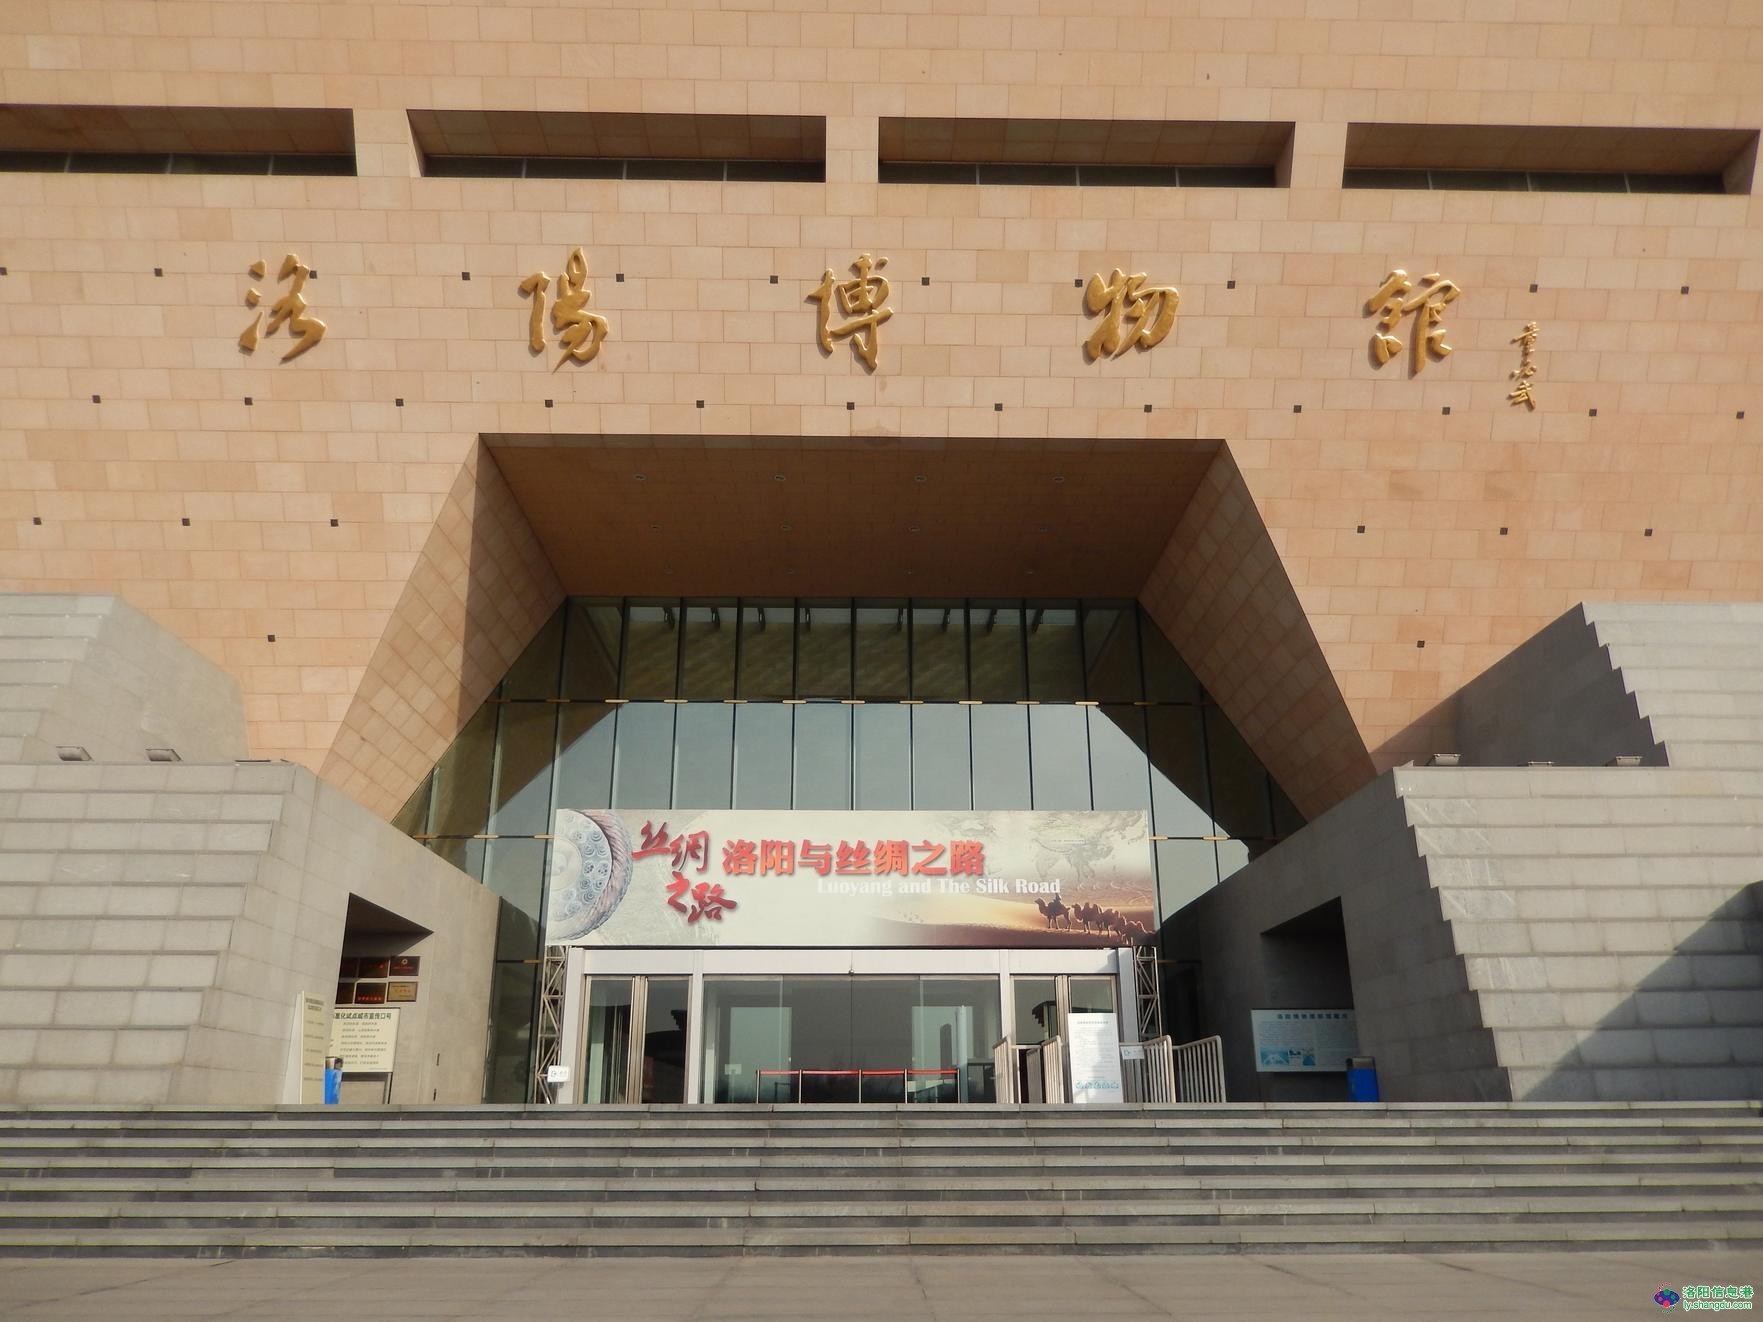 【携程攻略】福州中国船政文化博物馆景点,博物馆一共有五层建筑！游客凭生份证可以免费参观！里面的文化气息还…